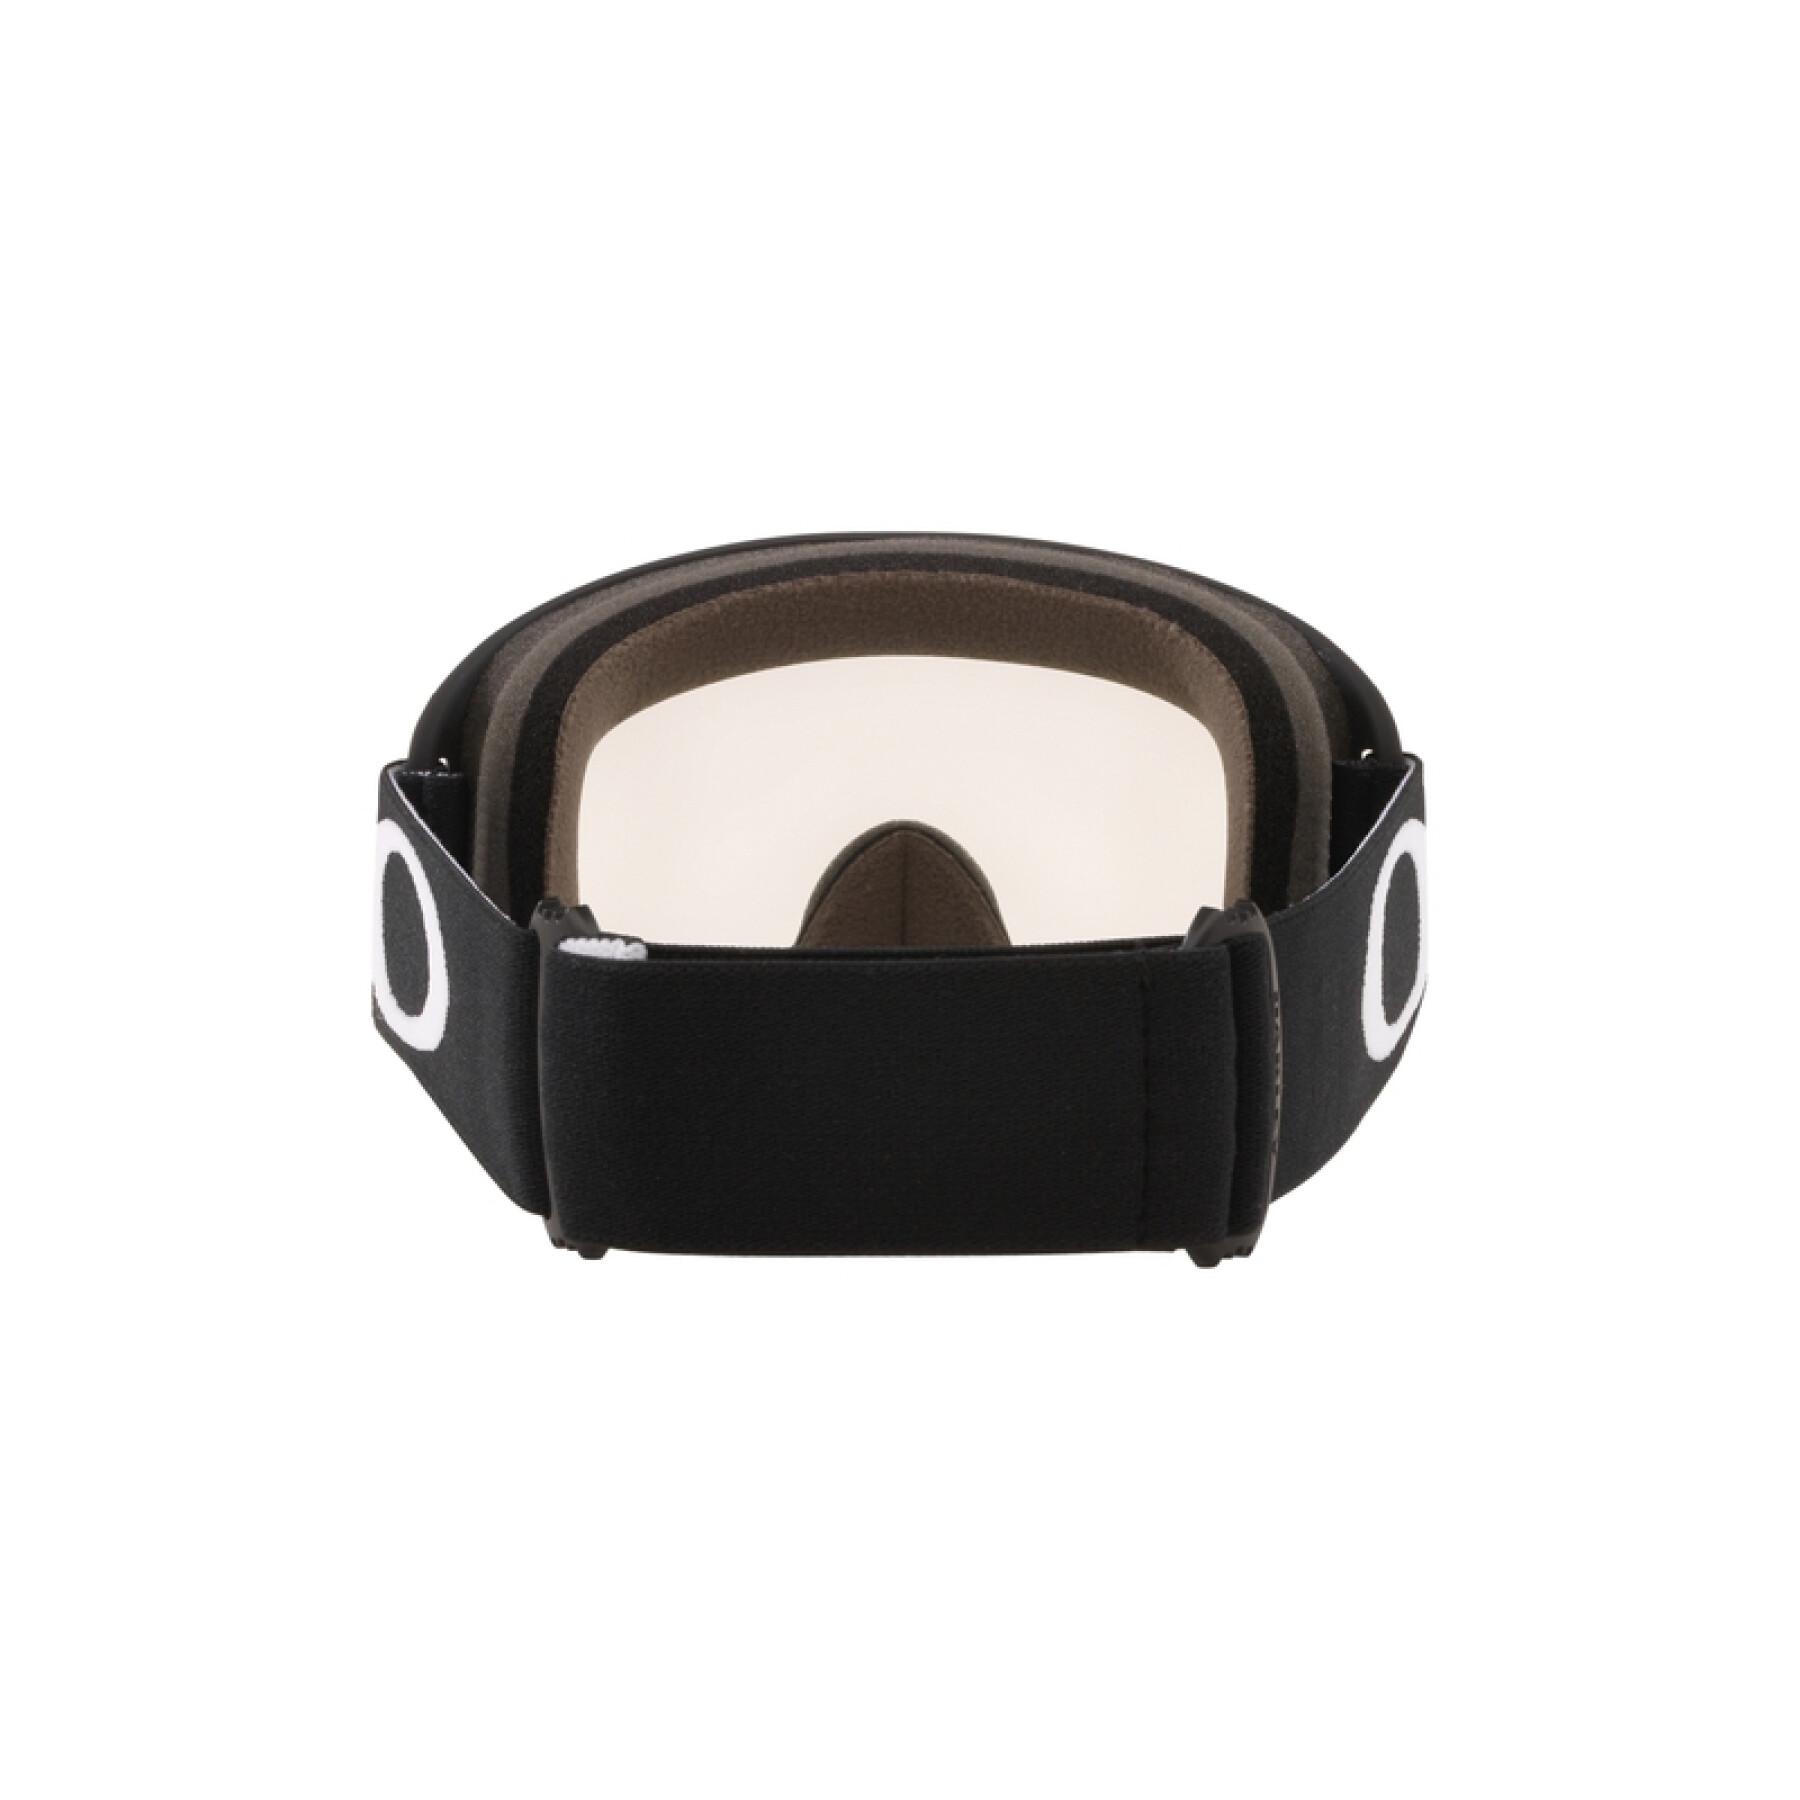 Motorrad-Cross-Maske Oakley O Frame 2.0 Pro MX